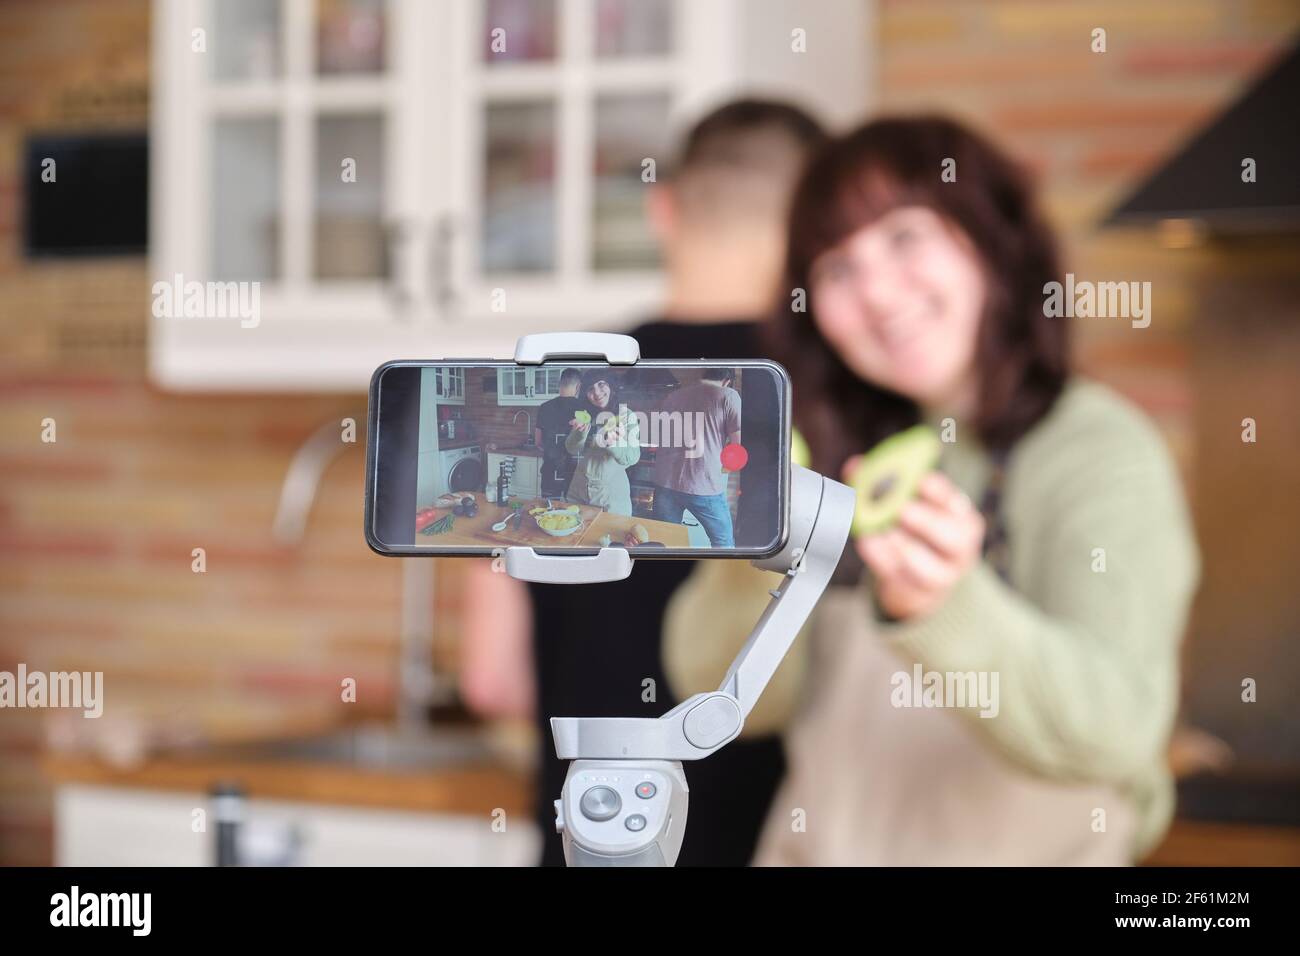 Jeune femme montrant un avocat à l'appareil photo et enregistrant une vidéo avec son smartphone pour sa chaîne de cuisine. Créateur de contenu et influenceur. Banque D'Images